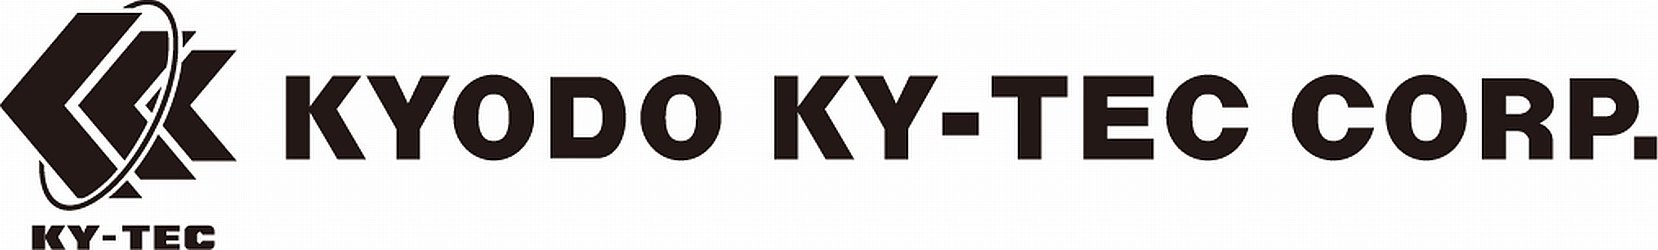 Trademark Logo KY-TEC KYODO KY-TEC CORP.